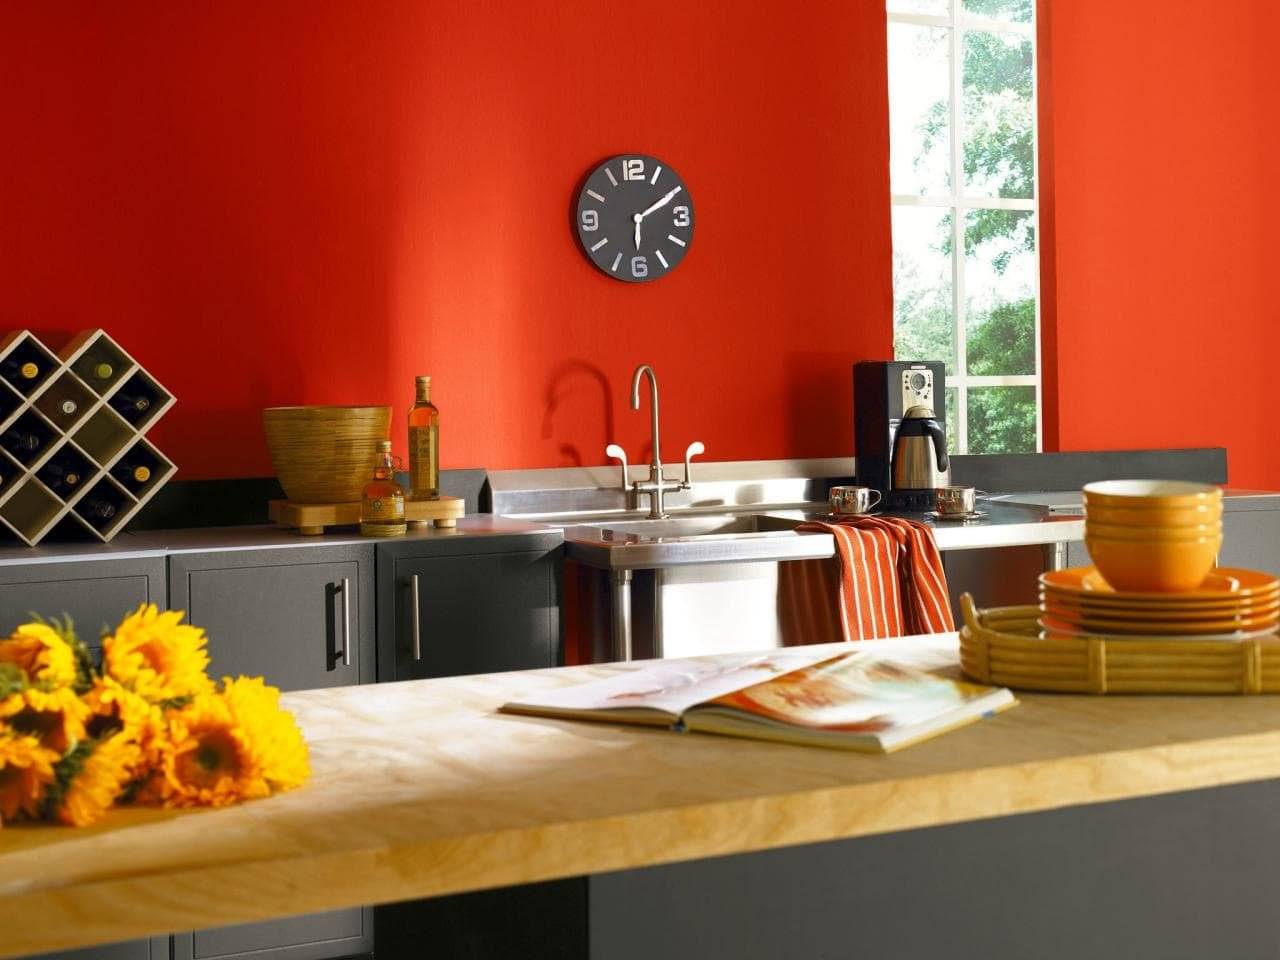 Дизайн кухни оранжевого цвета — апельсиновый стильный интерьер